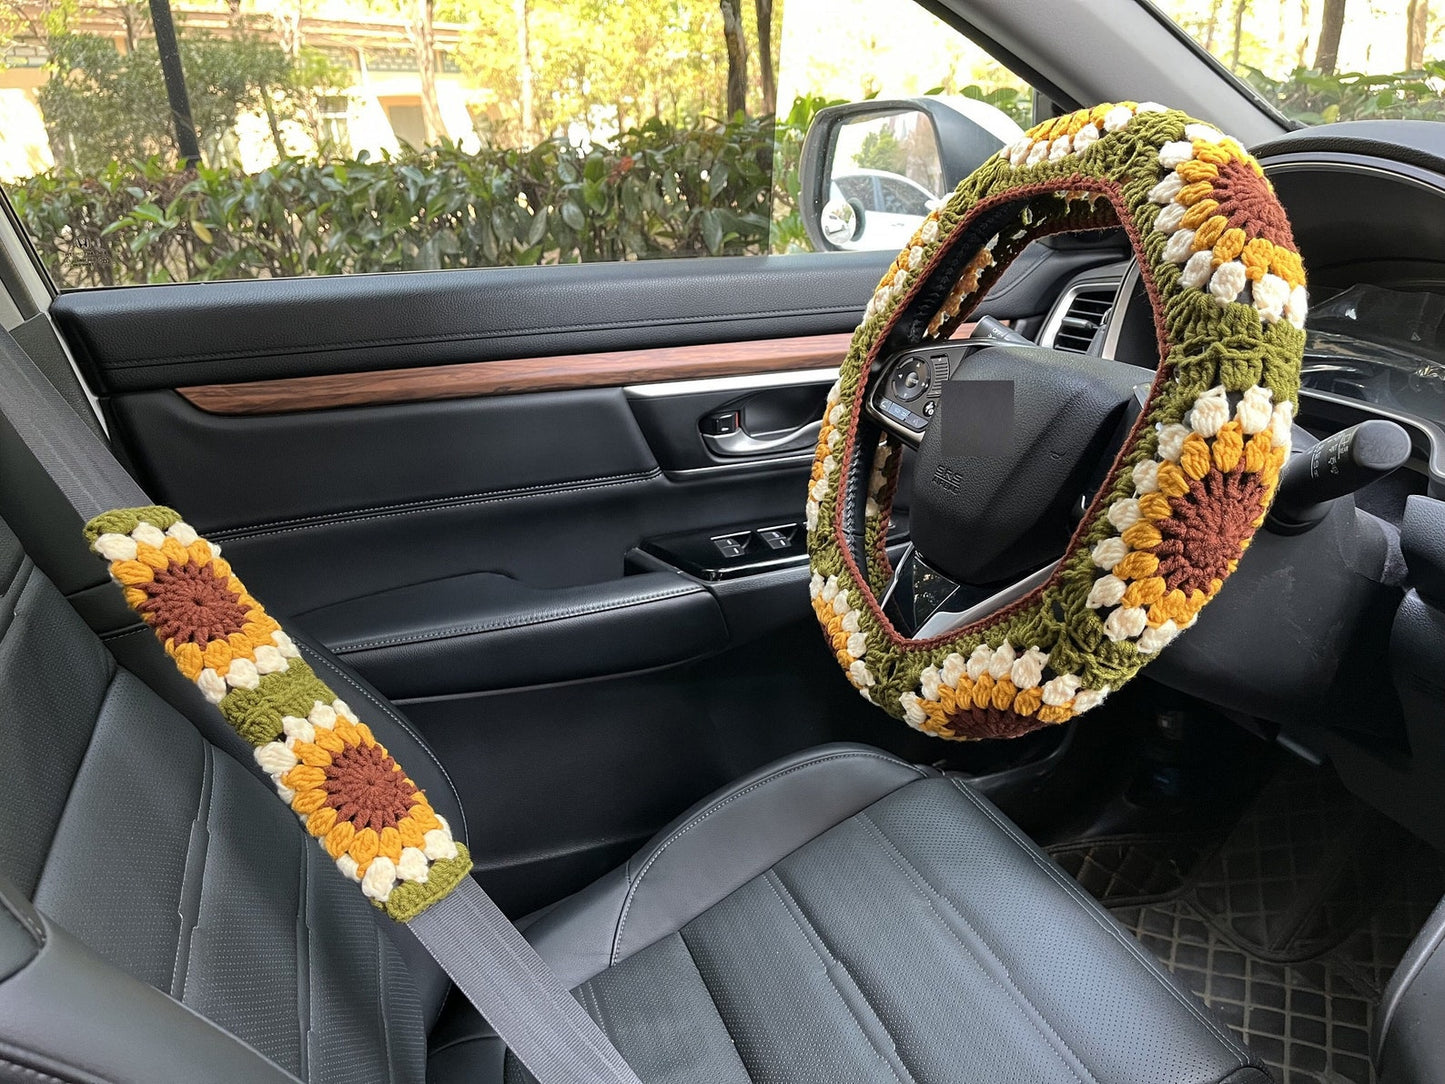 Sunflower Handmade Crochet Steering Wheel Cover Seat Belt Cover